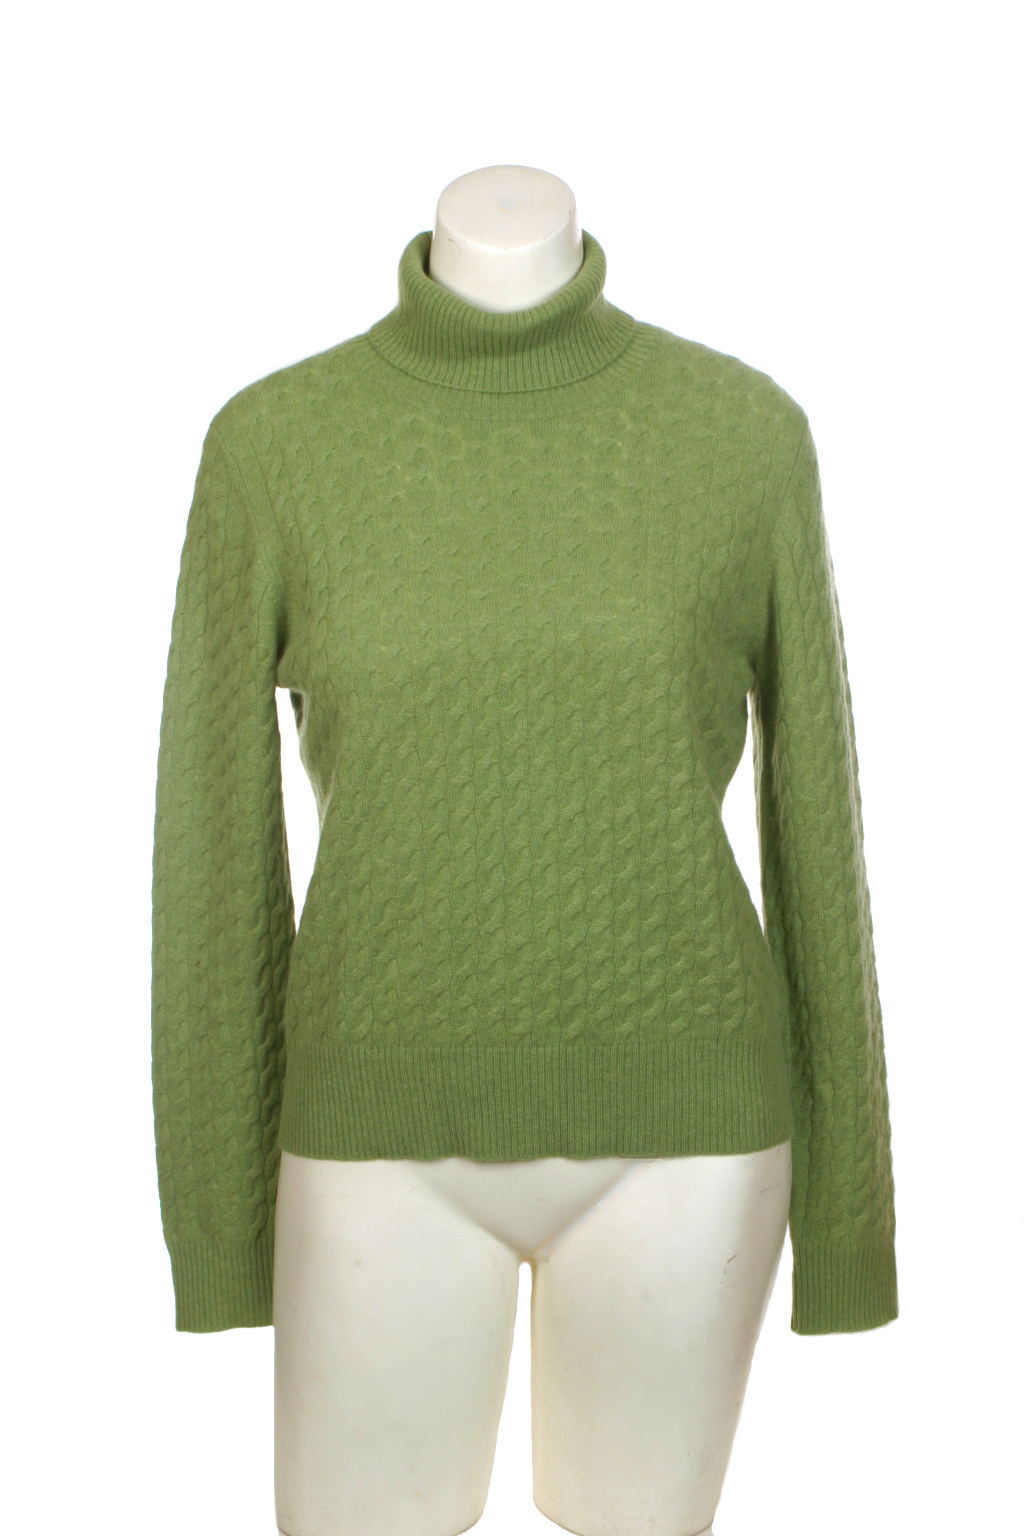 Thrift Shop Sweater Second Hand Womens Geneva Green Cashmere XL Sweater